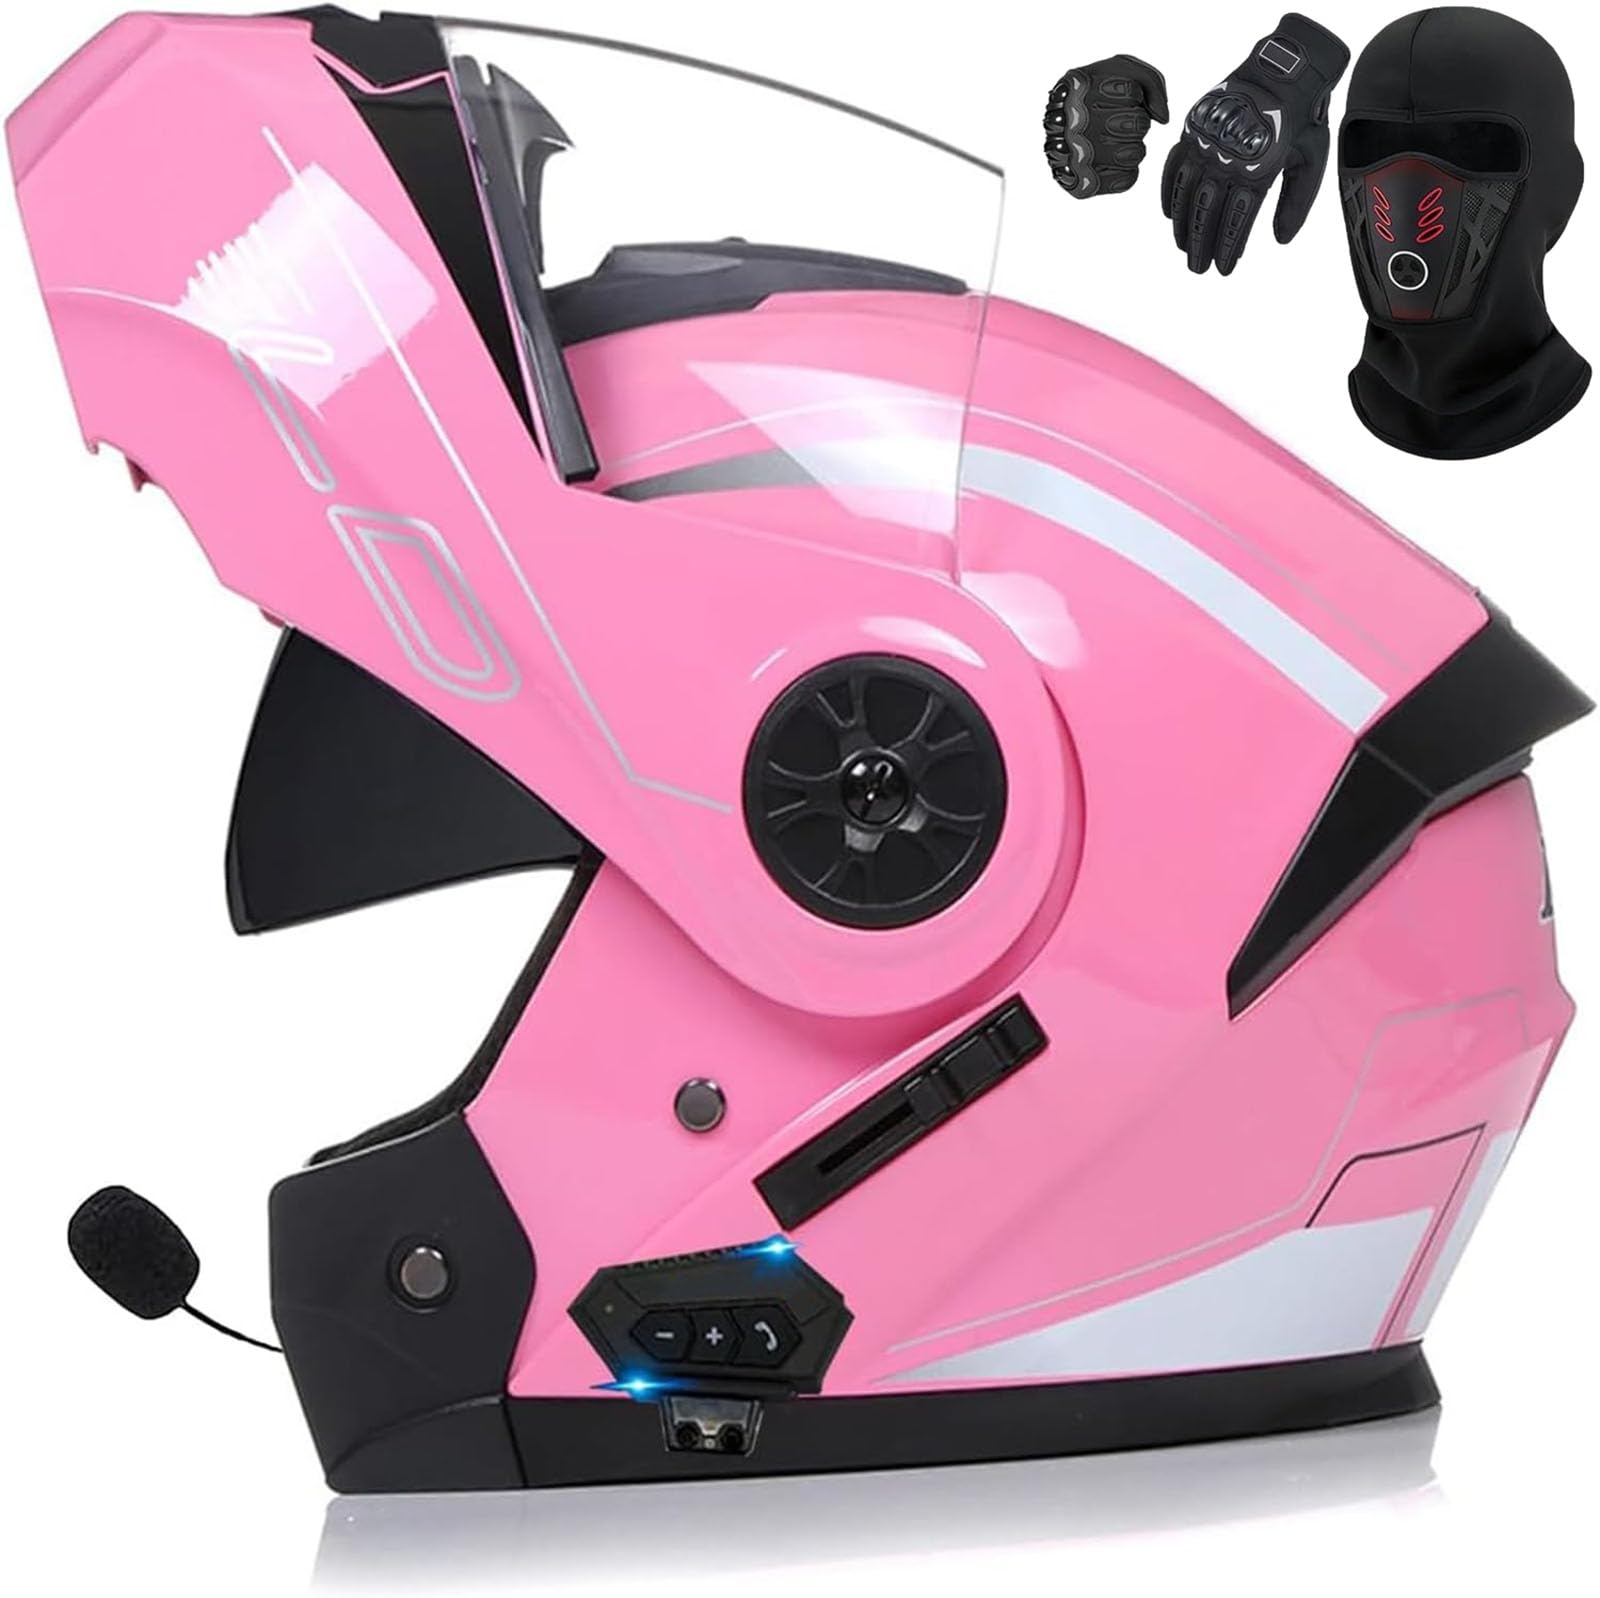 Motorradhelm Klappbar Integriert Motorradhelm Motorrad Full Face Helm mit Eingebautem Mikrofon für Automatische Reaktion Klapphelm mit Bluetooth ECE Zertifiziert Hohe Qualität Helm von GHHTHEN